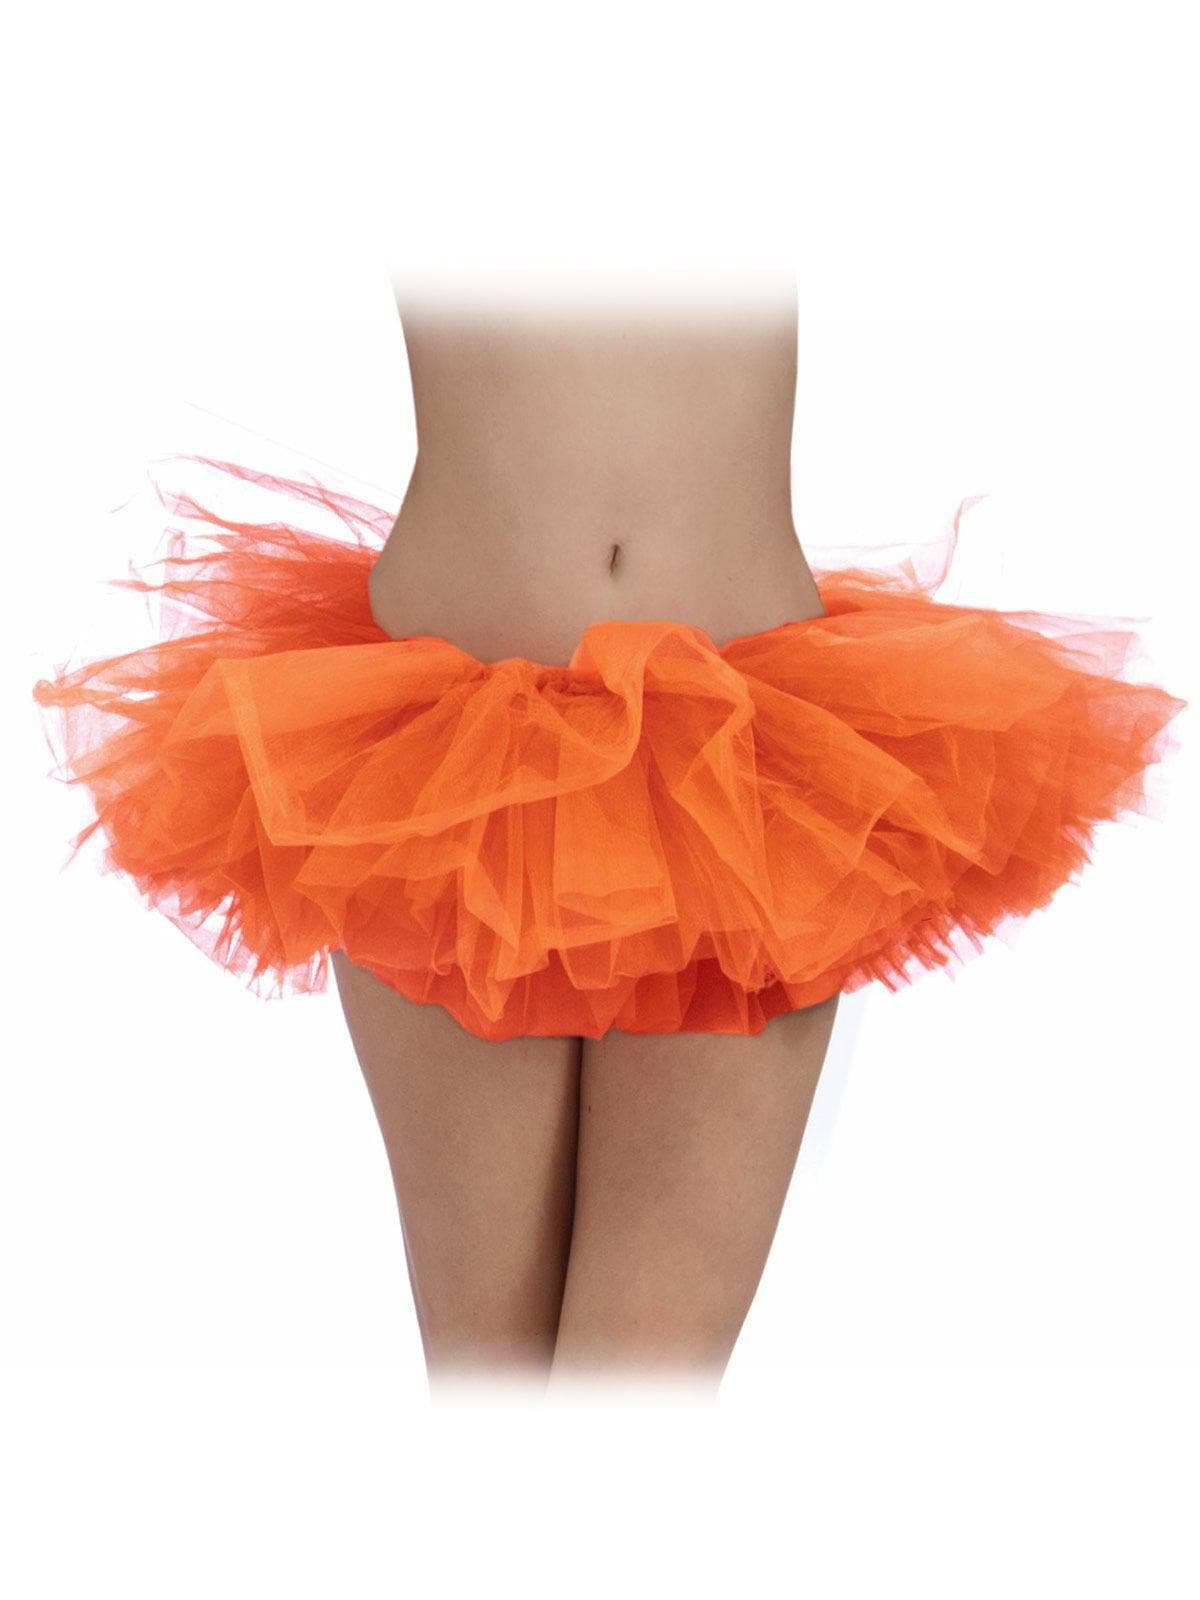 Orange Tutu - costumes.com